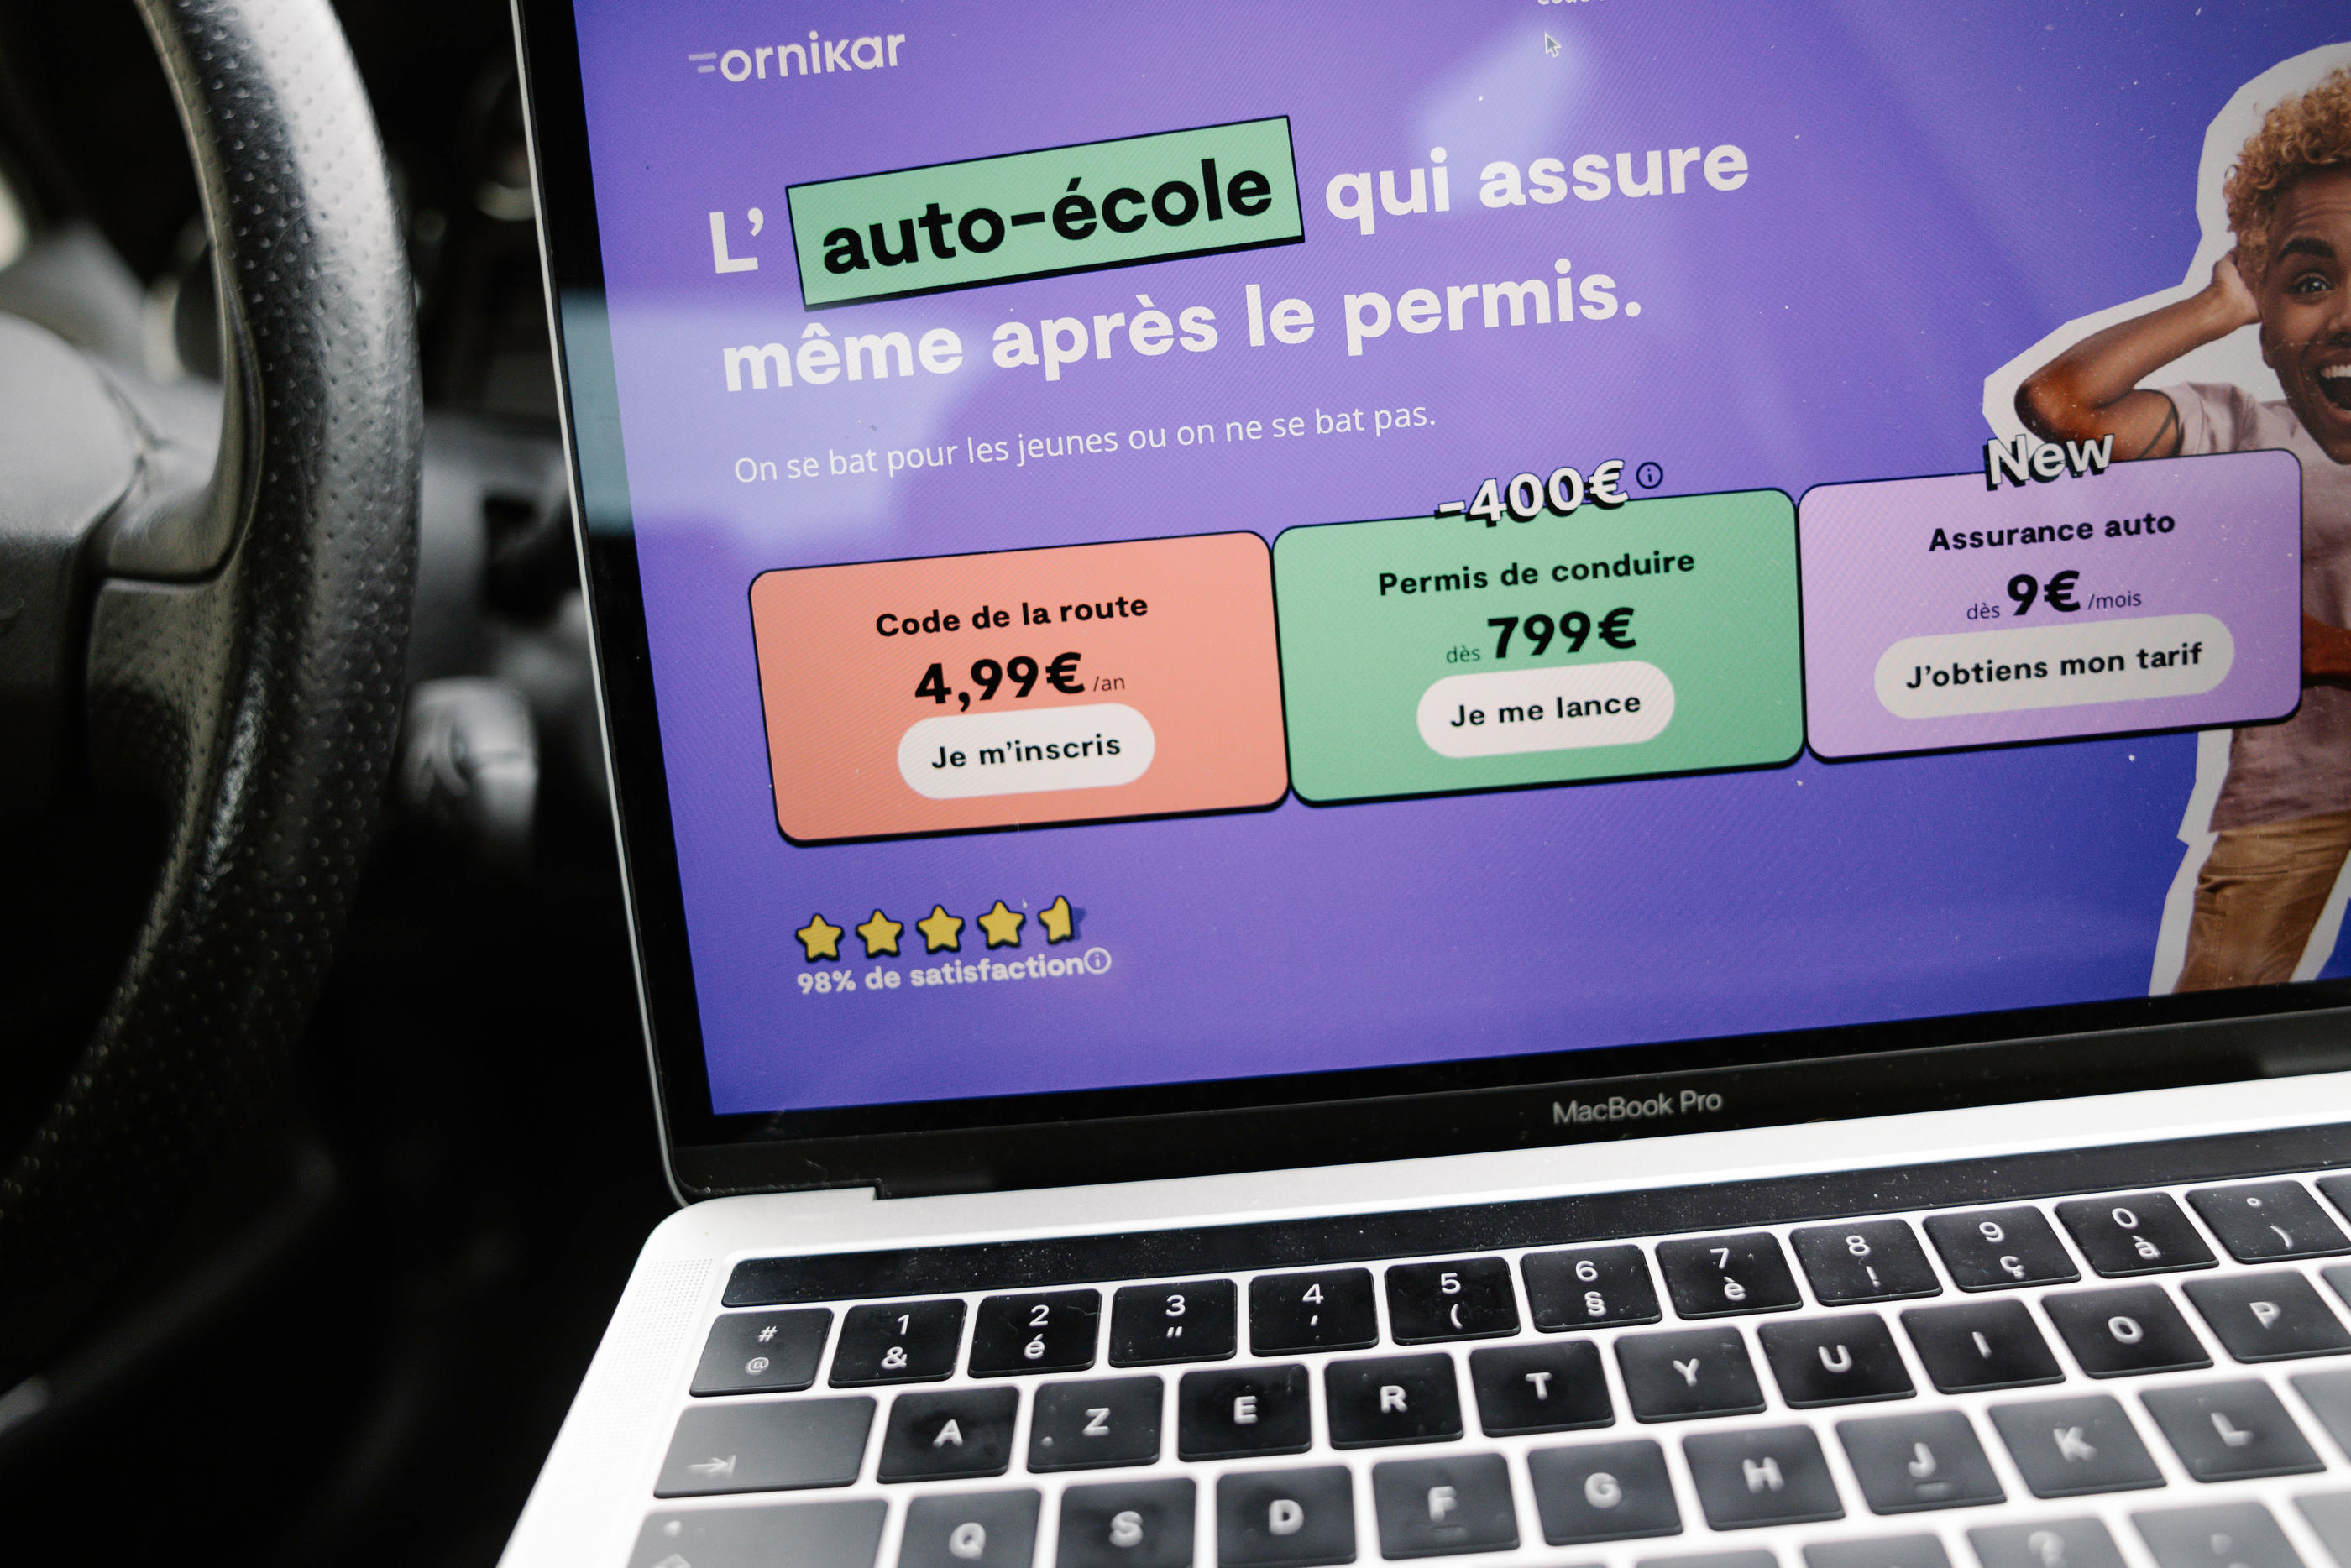 Pour l'assurance auto, Ornikar propose un prix d’appel à 9 euros par mois... à certaines conditions. LP/ Arnaud Dumontier